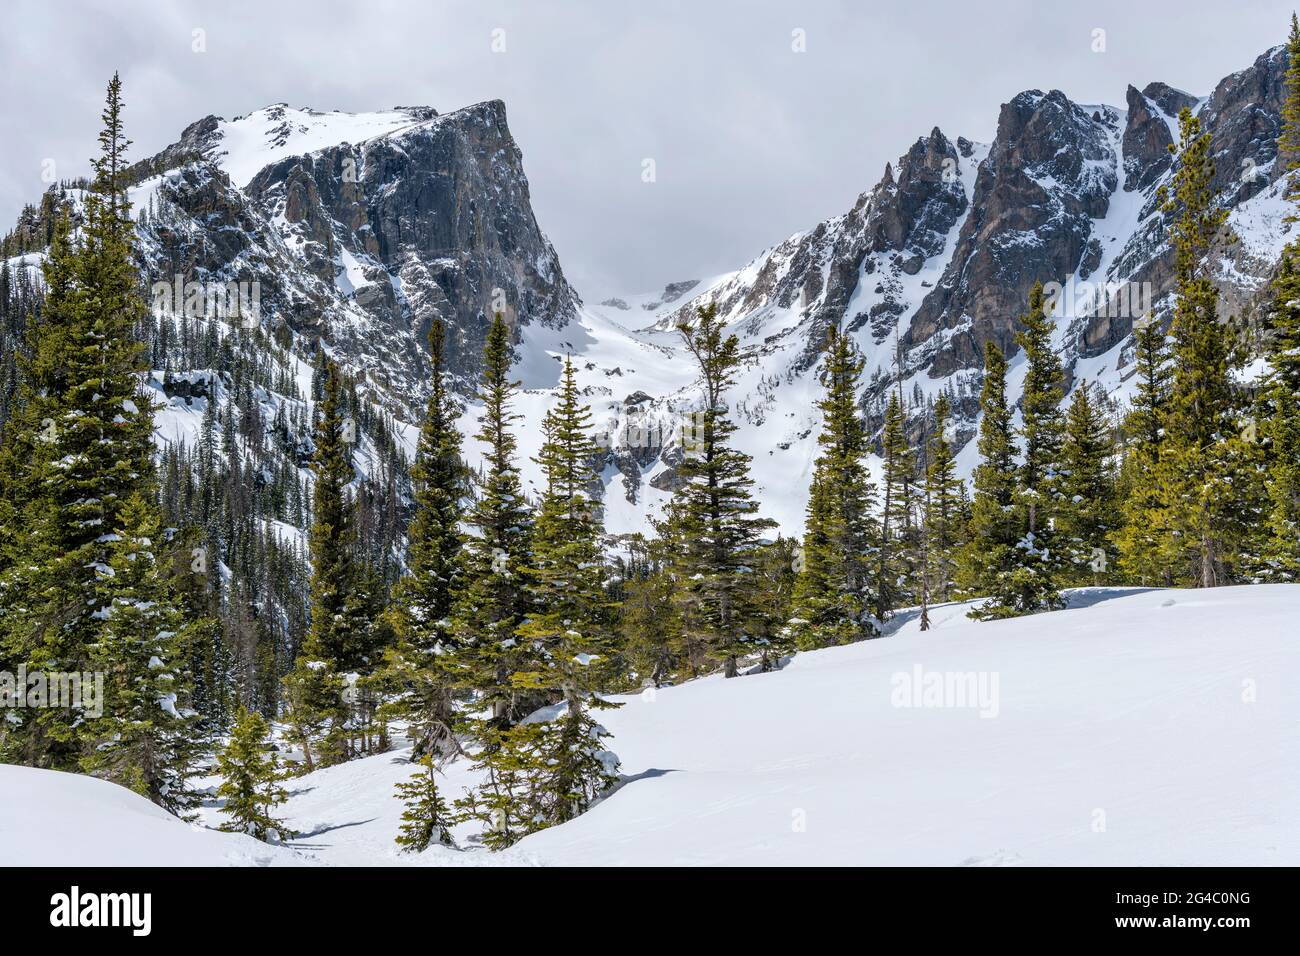 Spring Mountains - VUE rapprochée de Hallett Peak et de Flattop Mountain, entourée de neige et de forêt, dans le parc national des montagnes Rocheuses, Colorado, États-Unis. Banque D'Images